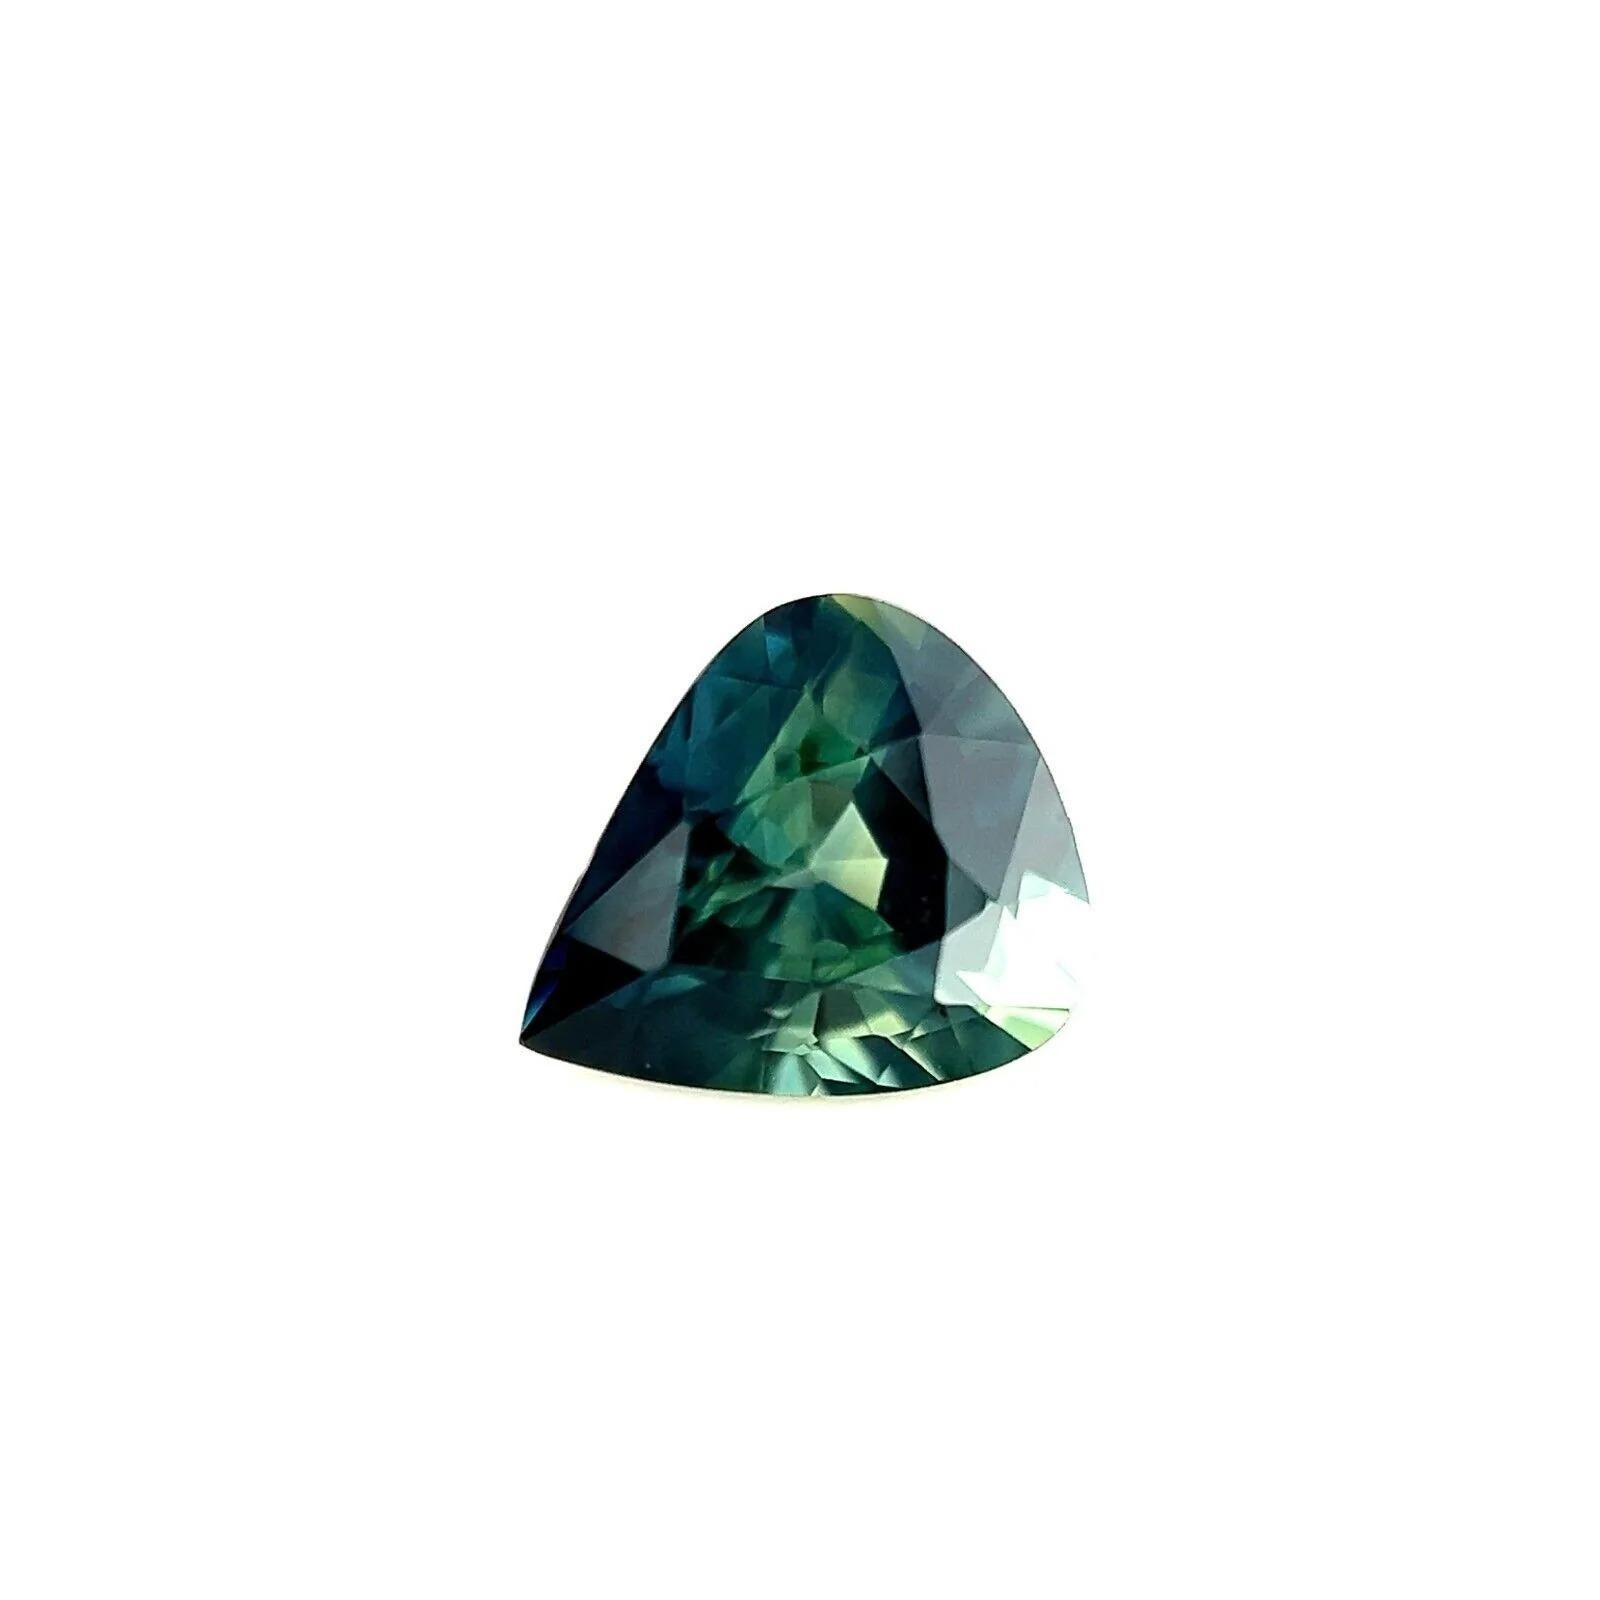 0.86ct Australische Parti Farbe Saphir Grün Blau Birne Schliff VVS Edelstein 6.2x5.4mm

Feiner natürlicher australischer Parti Colour Sapphire Edelstein.
0.86 Karat mit einer schönen und einzigartigen grünblauen Partiefarbe. Einzigartiger und